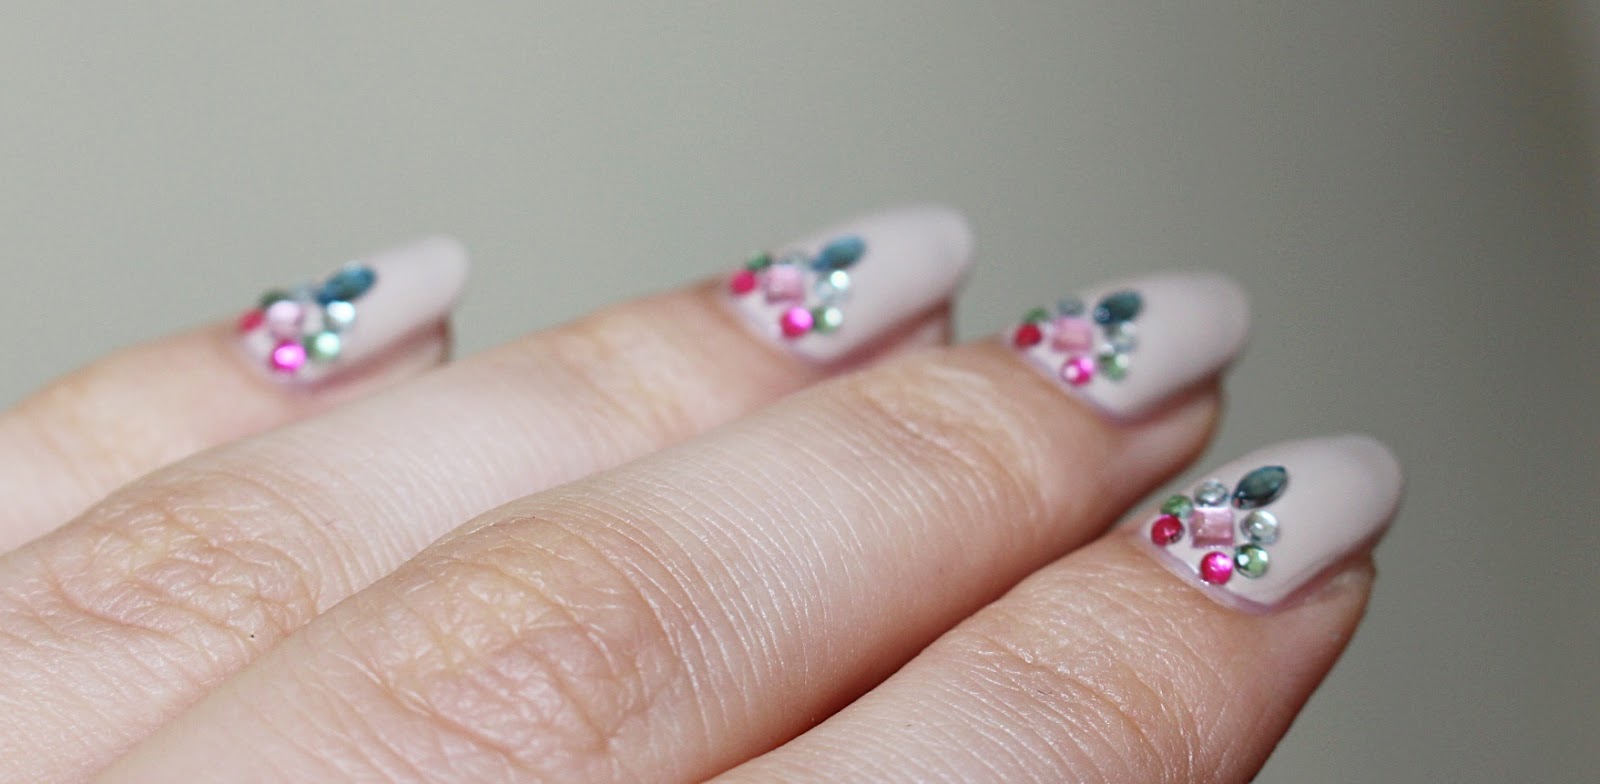 Essie Sand Tropez nude nails swarovski crystal kryształy na paznokciach kamienie almond nails migdałowe paznokcie z instagrama jak zrobić migdałowe paznokcie 